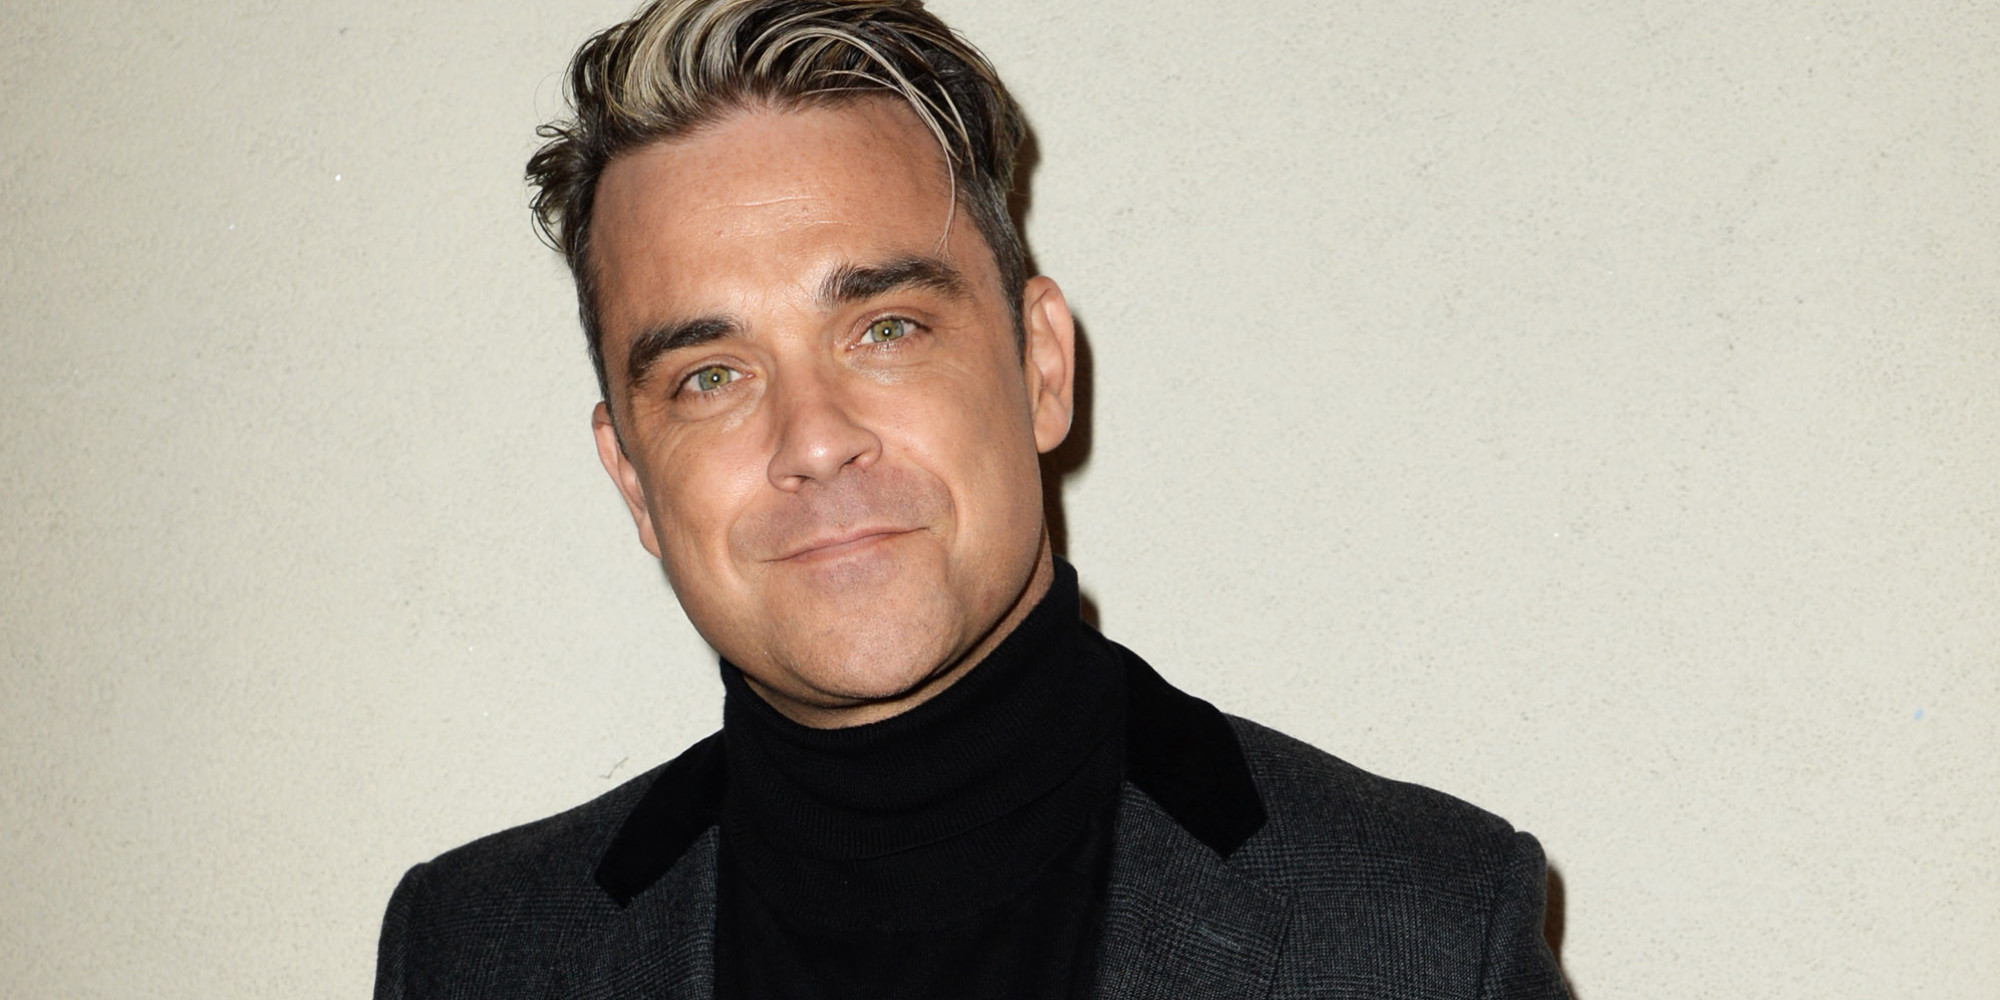 La carrera de Robbie Williams en solitario es un éxito